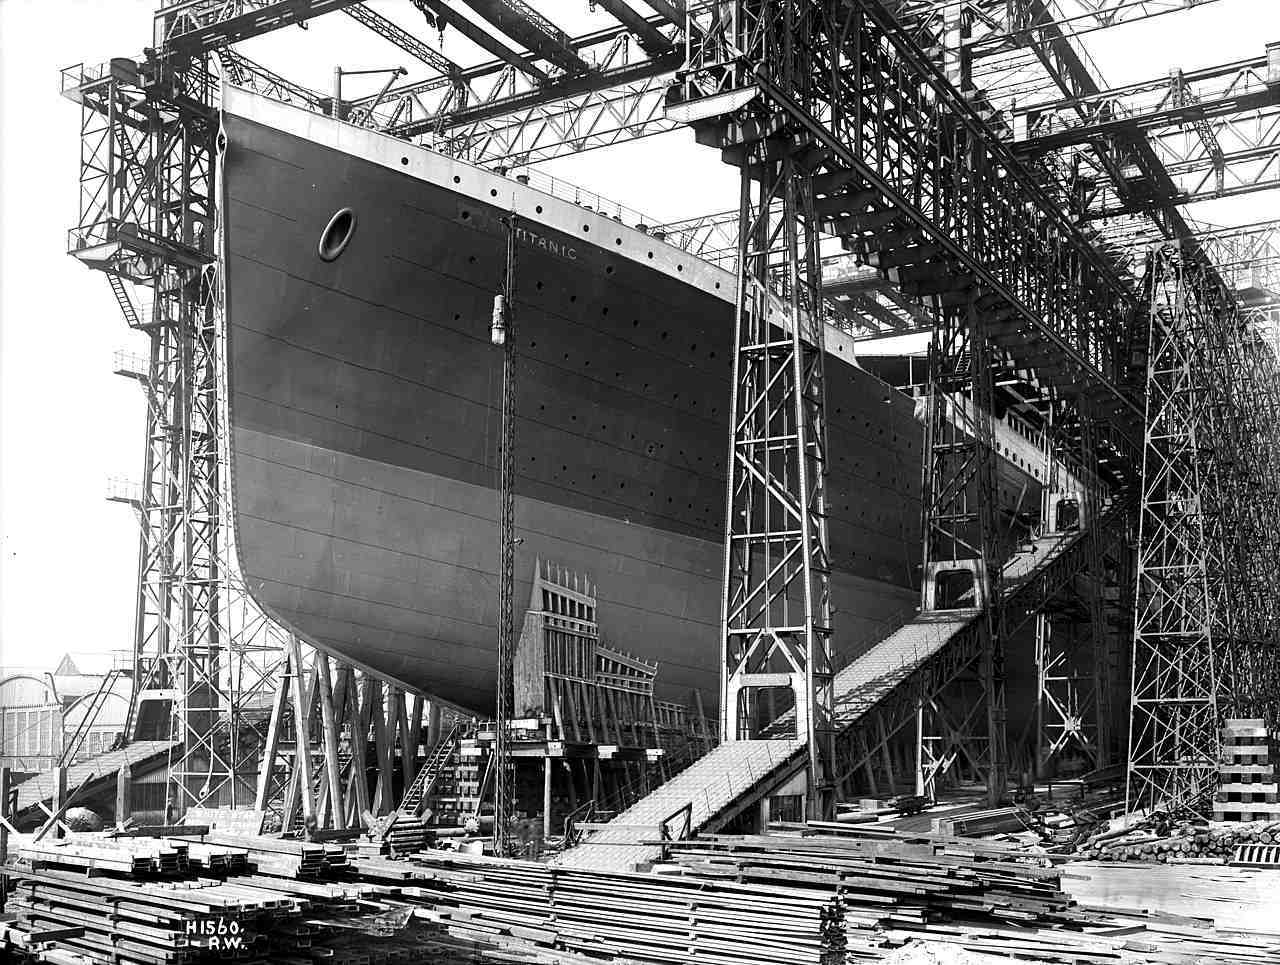 De mörka hemligheterna och några lite kända fakta bakom Titanic-katastrofen 2